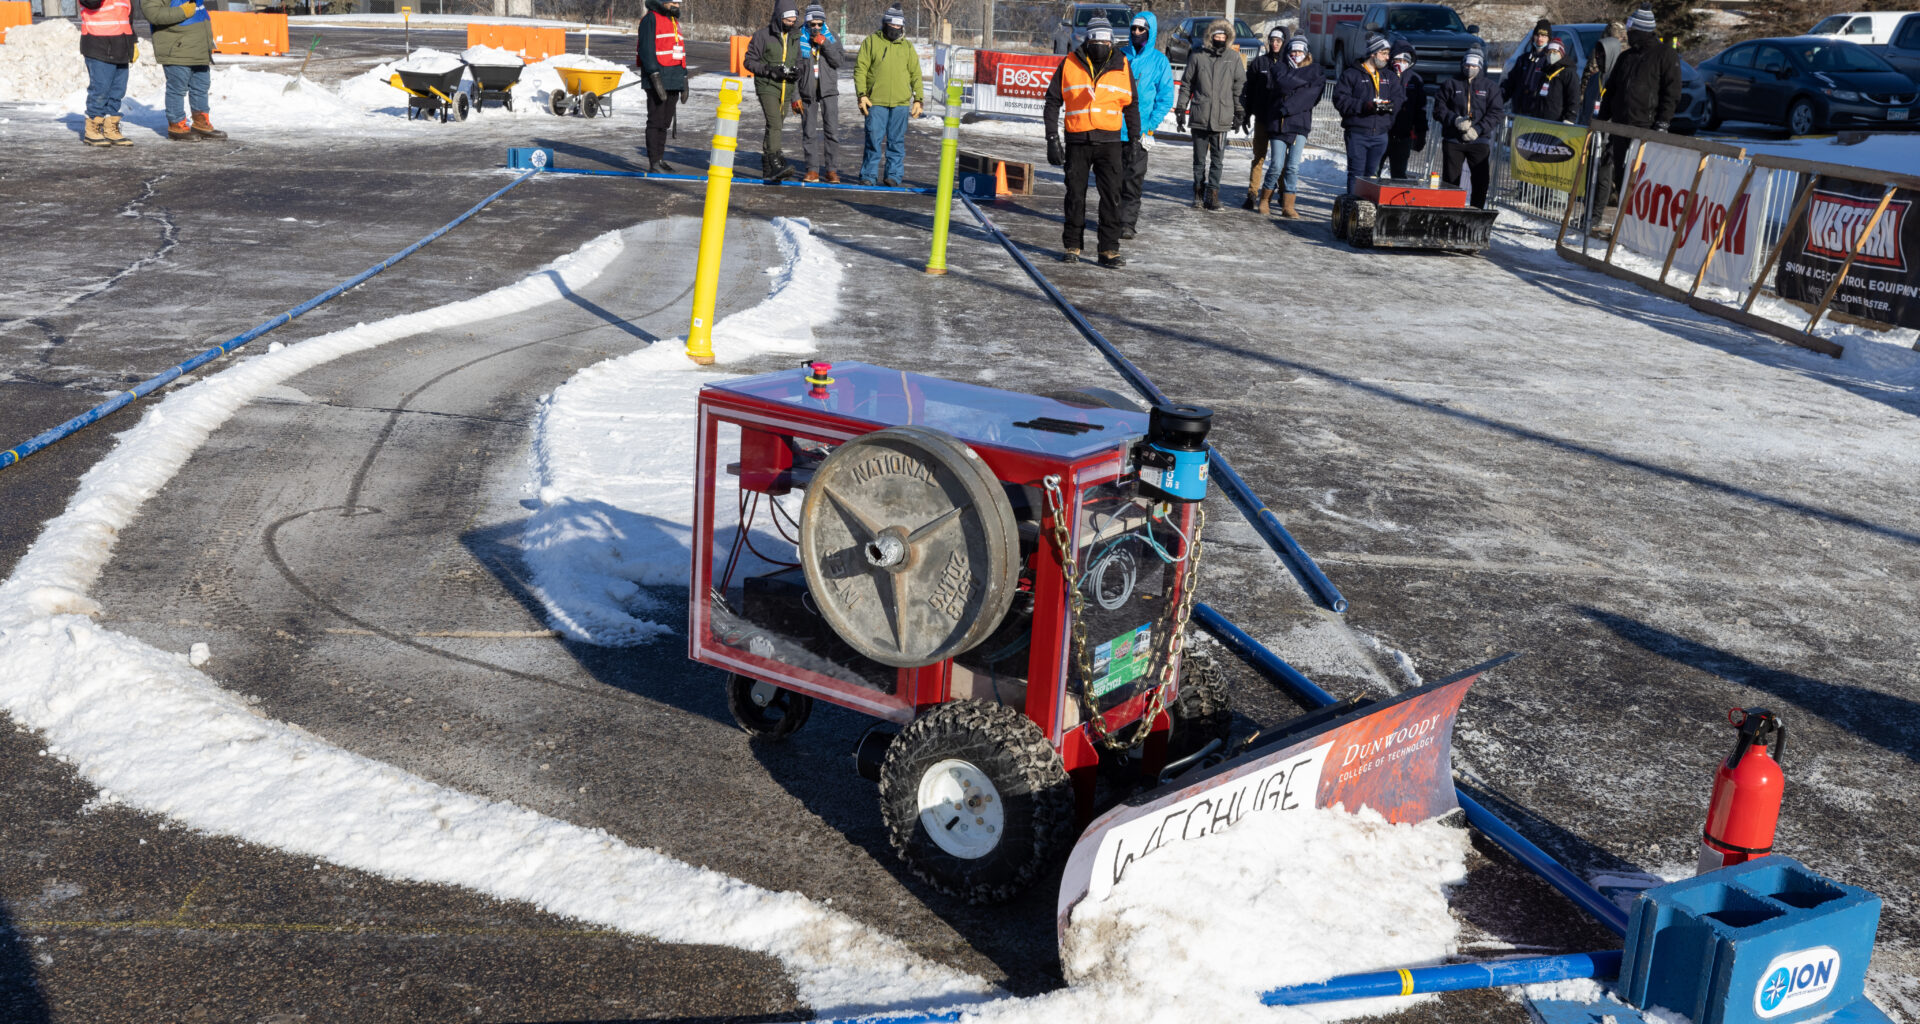 snowplow competition, SICK Sensors in Action: The Autonomous Snowplow Competition